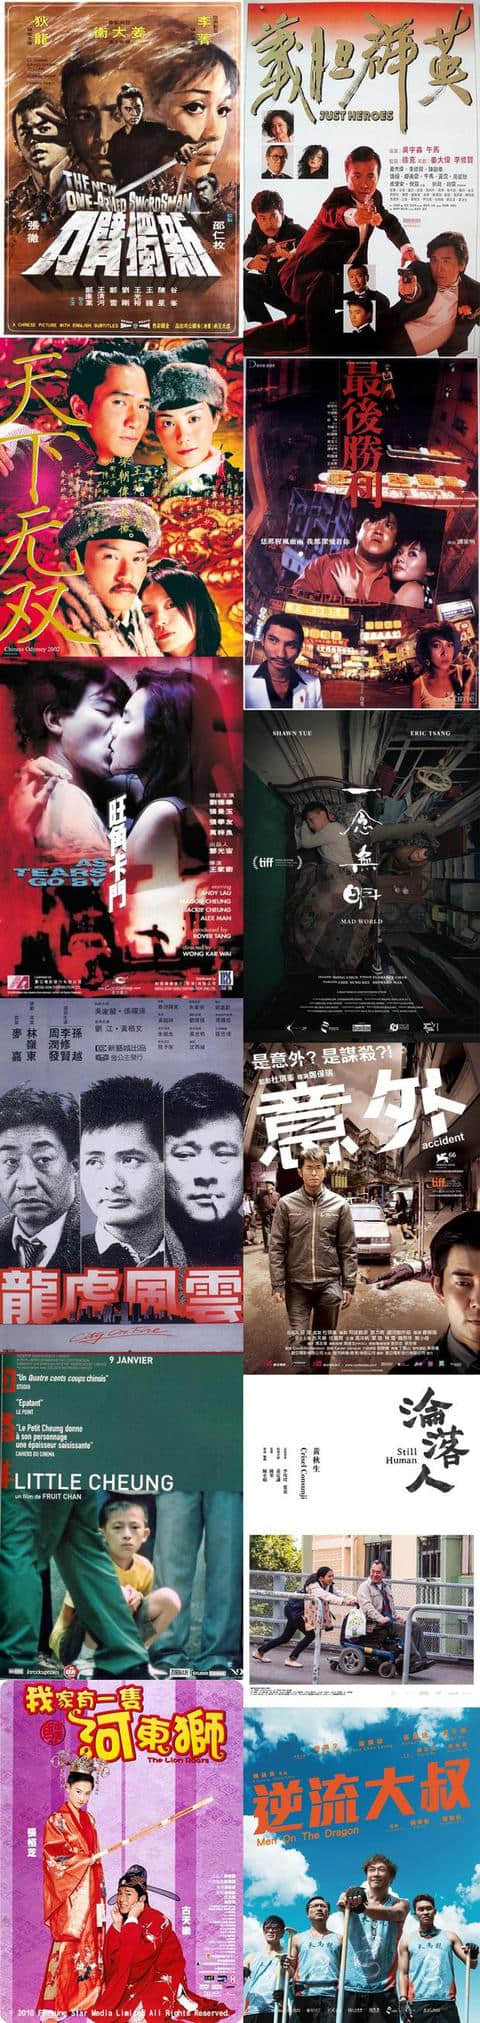 陈果监制《沦落人》开幕第八届香港影展